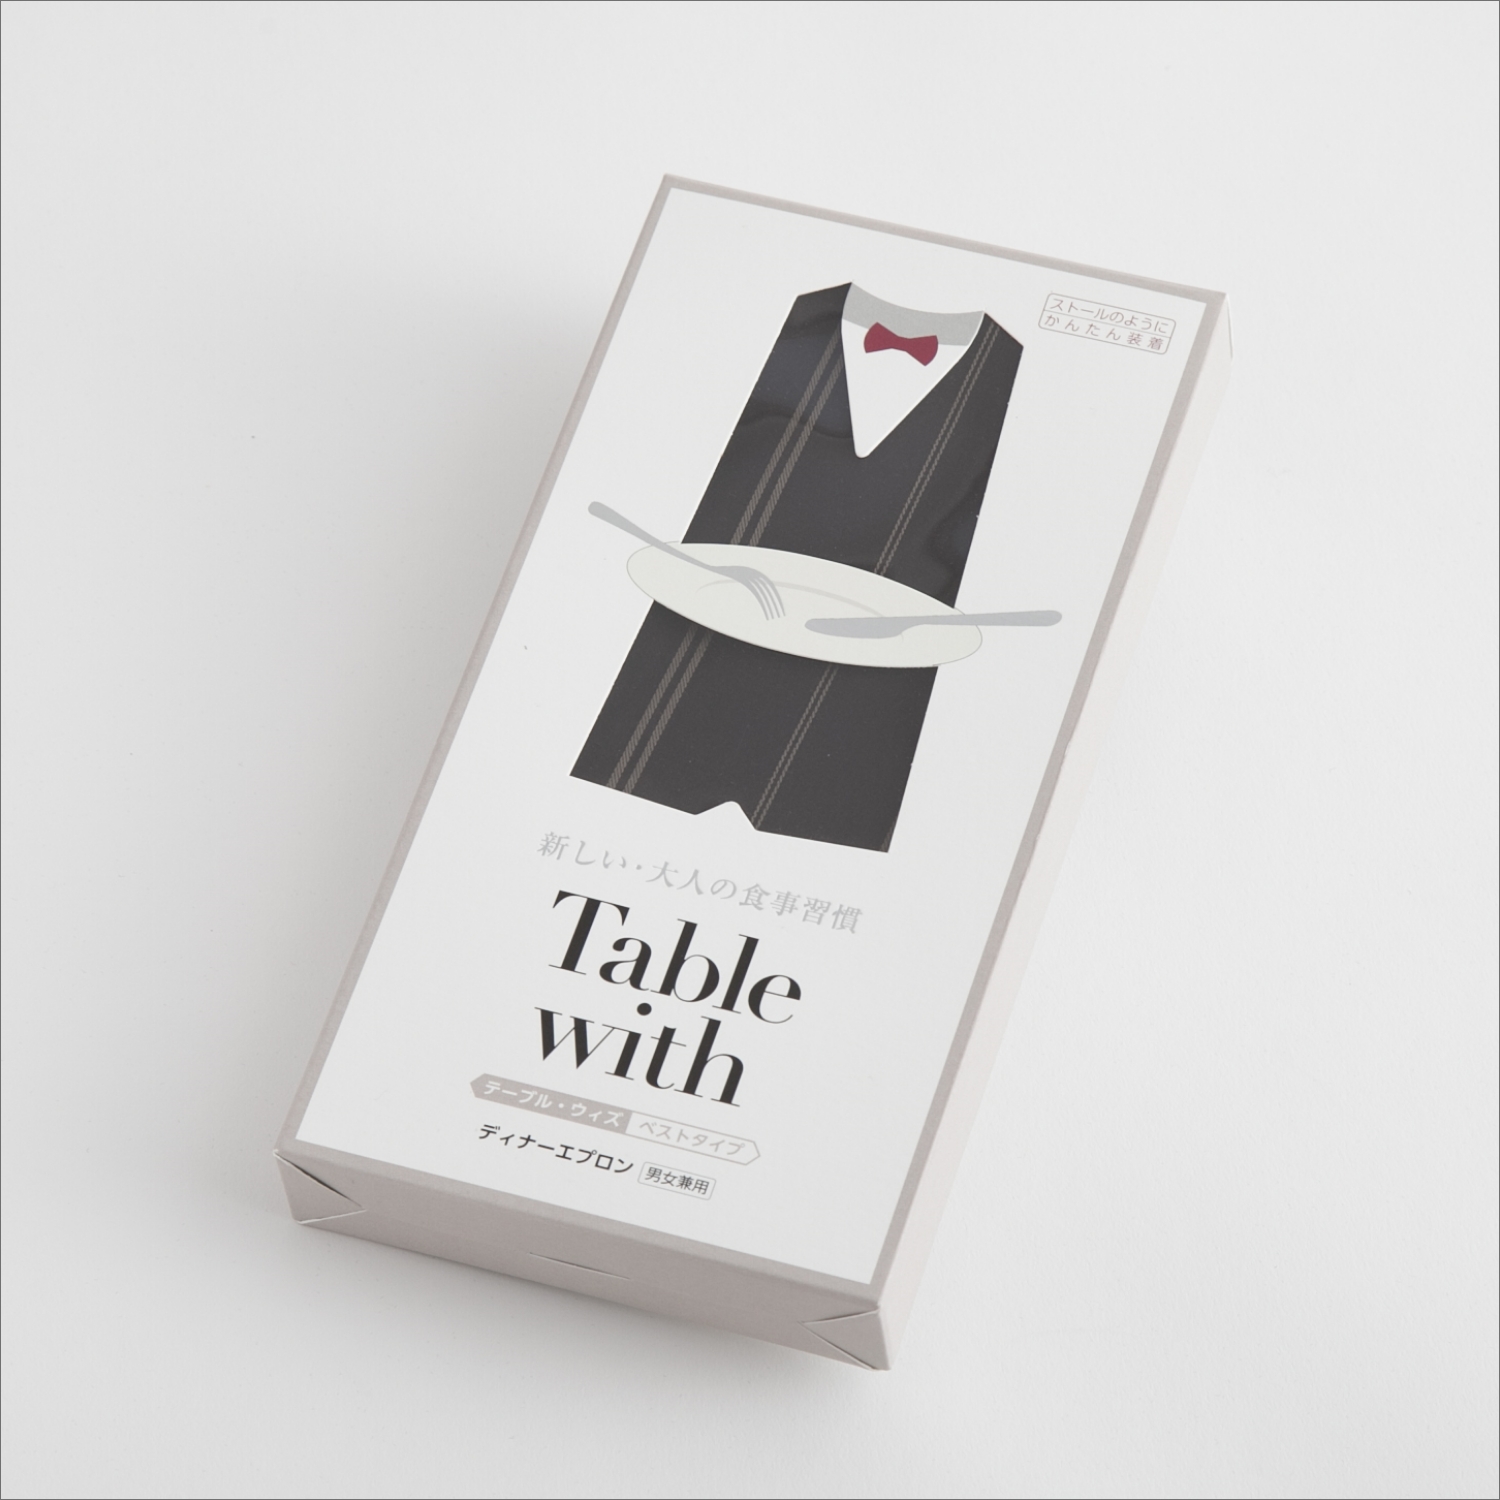 Table with ベストタイプ